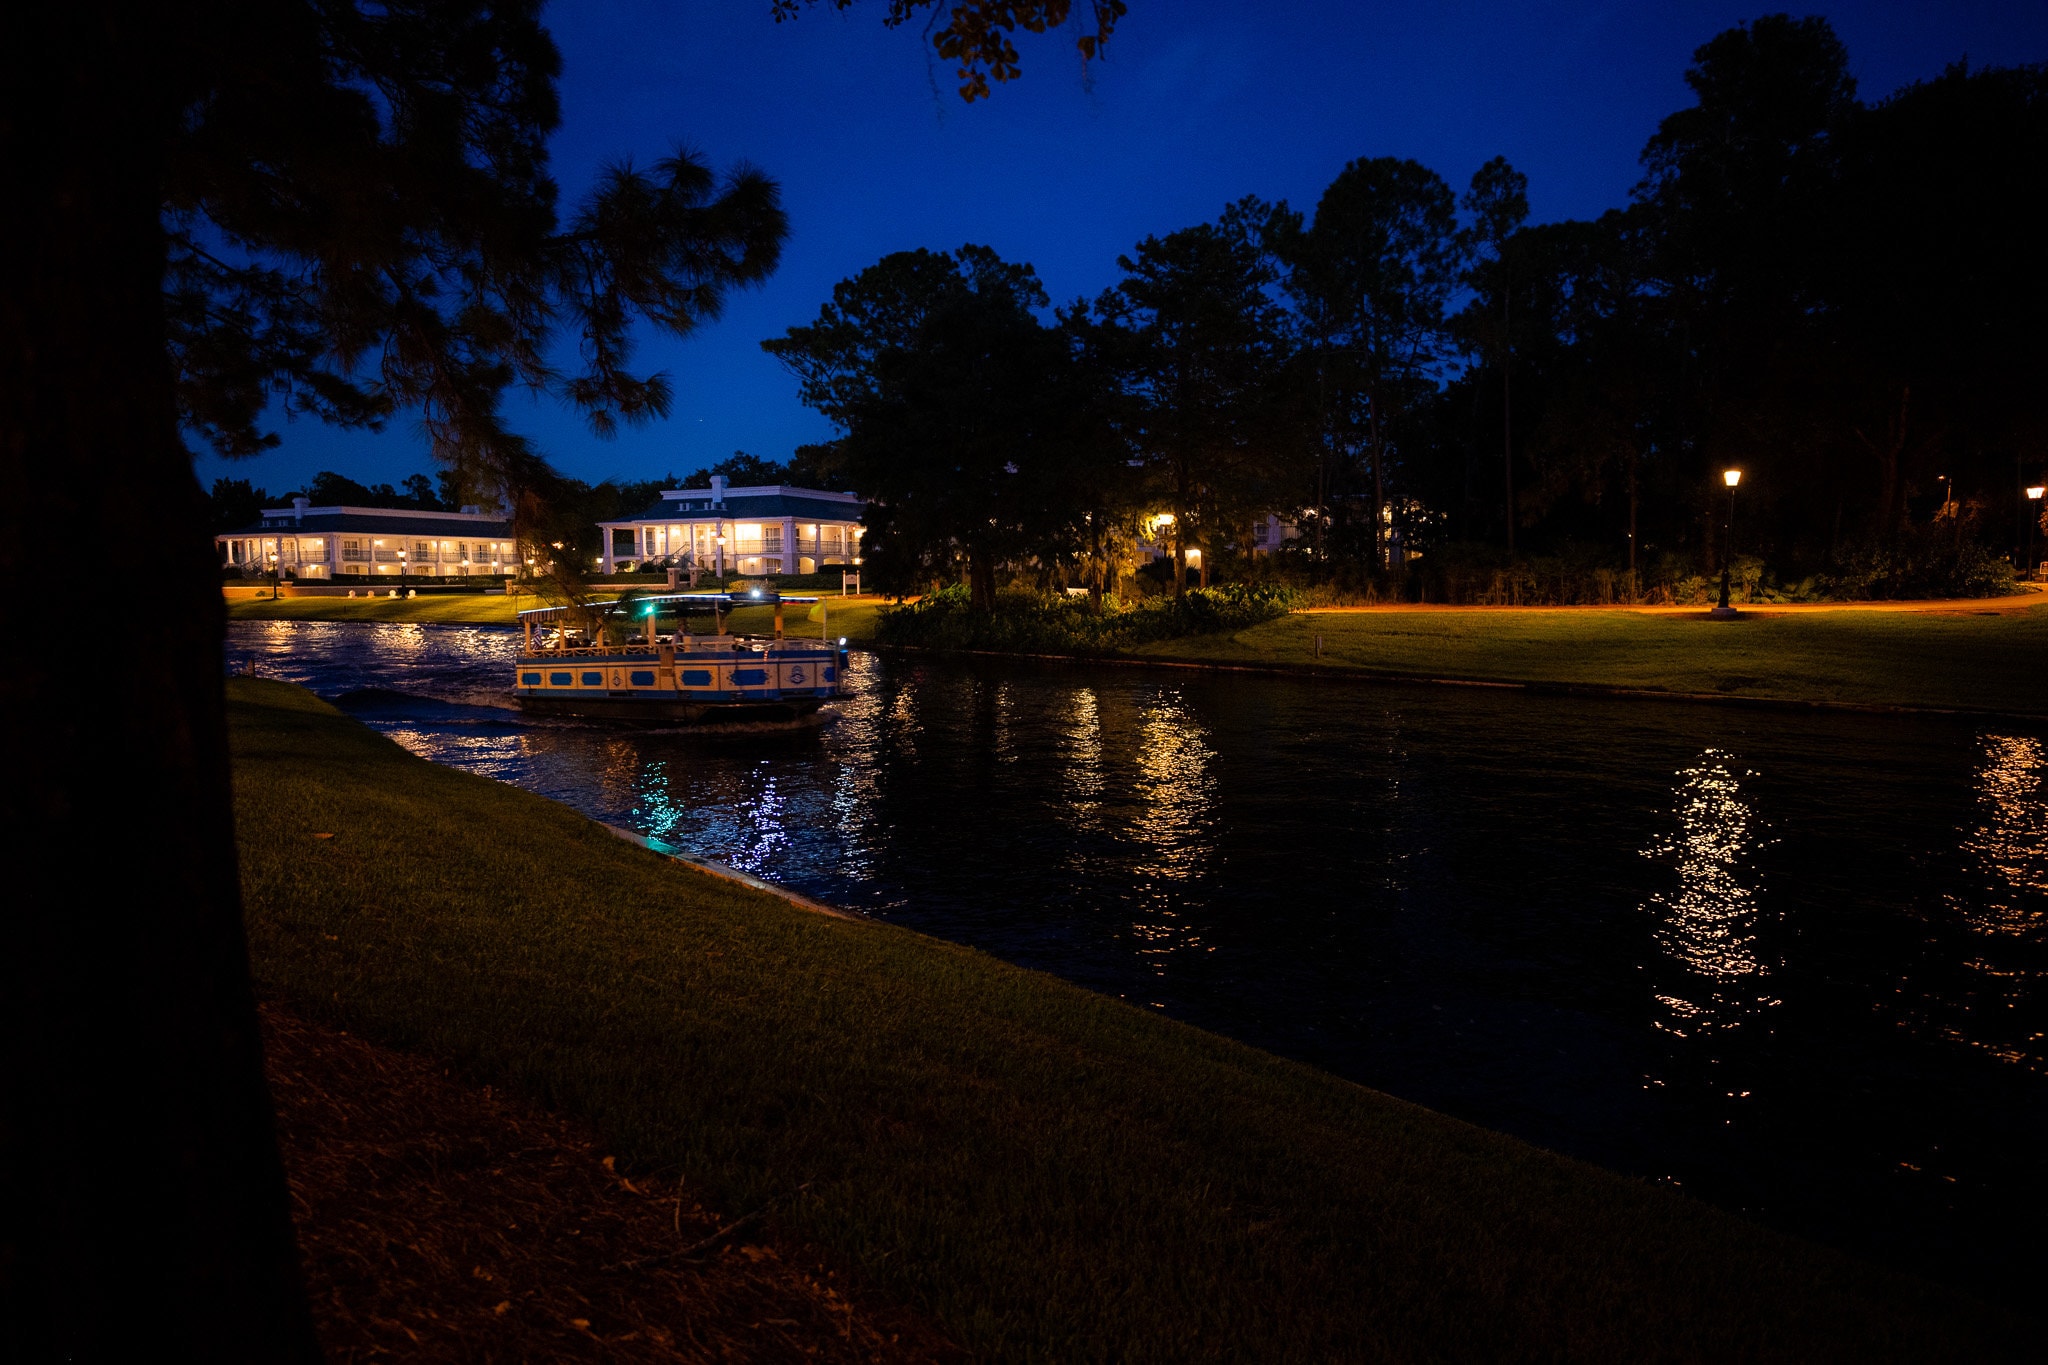 Boats at Port Orleans Riverside at Disney World at night.